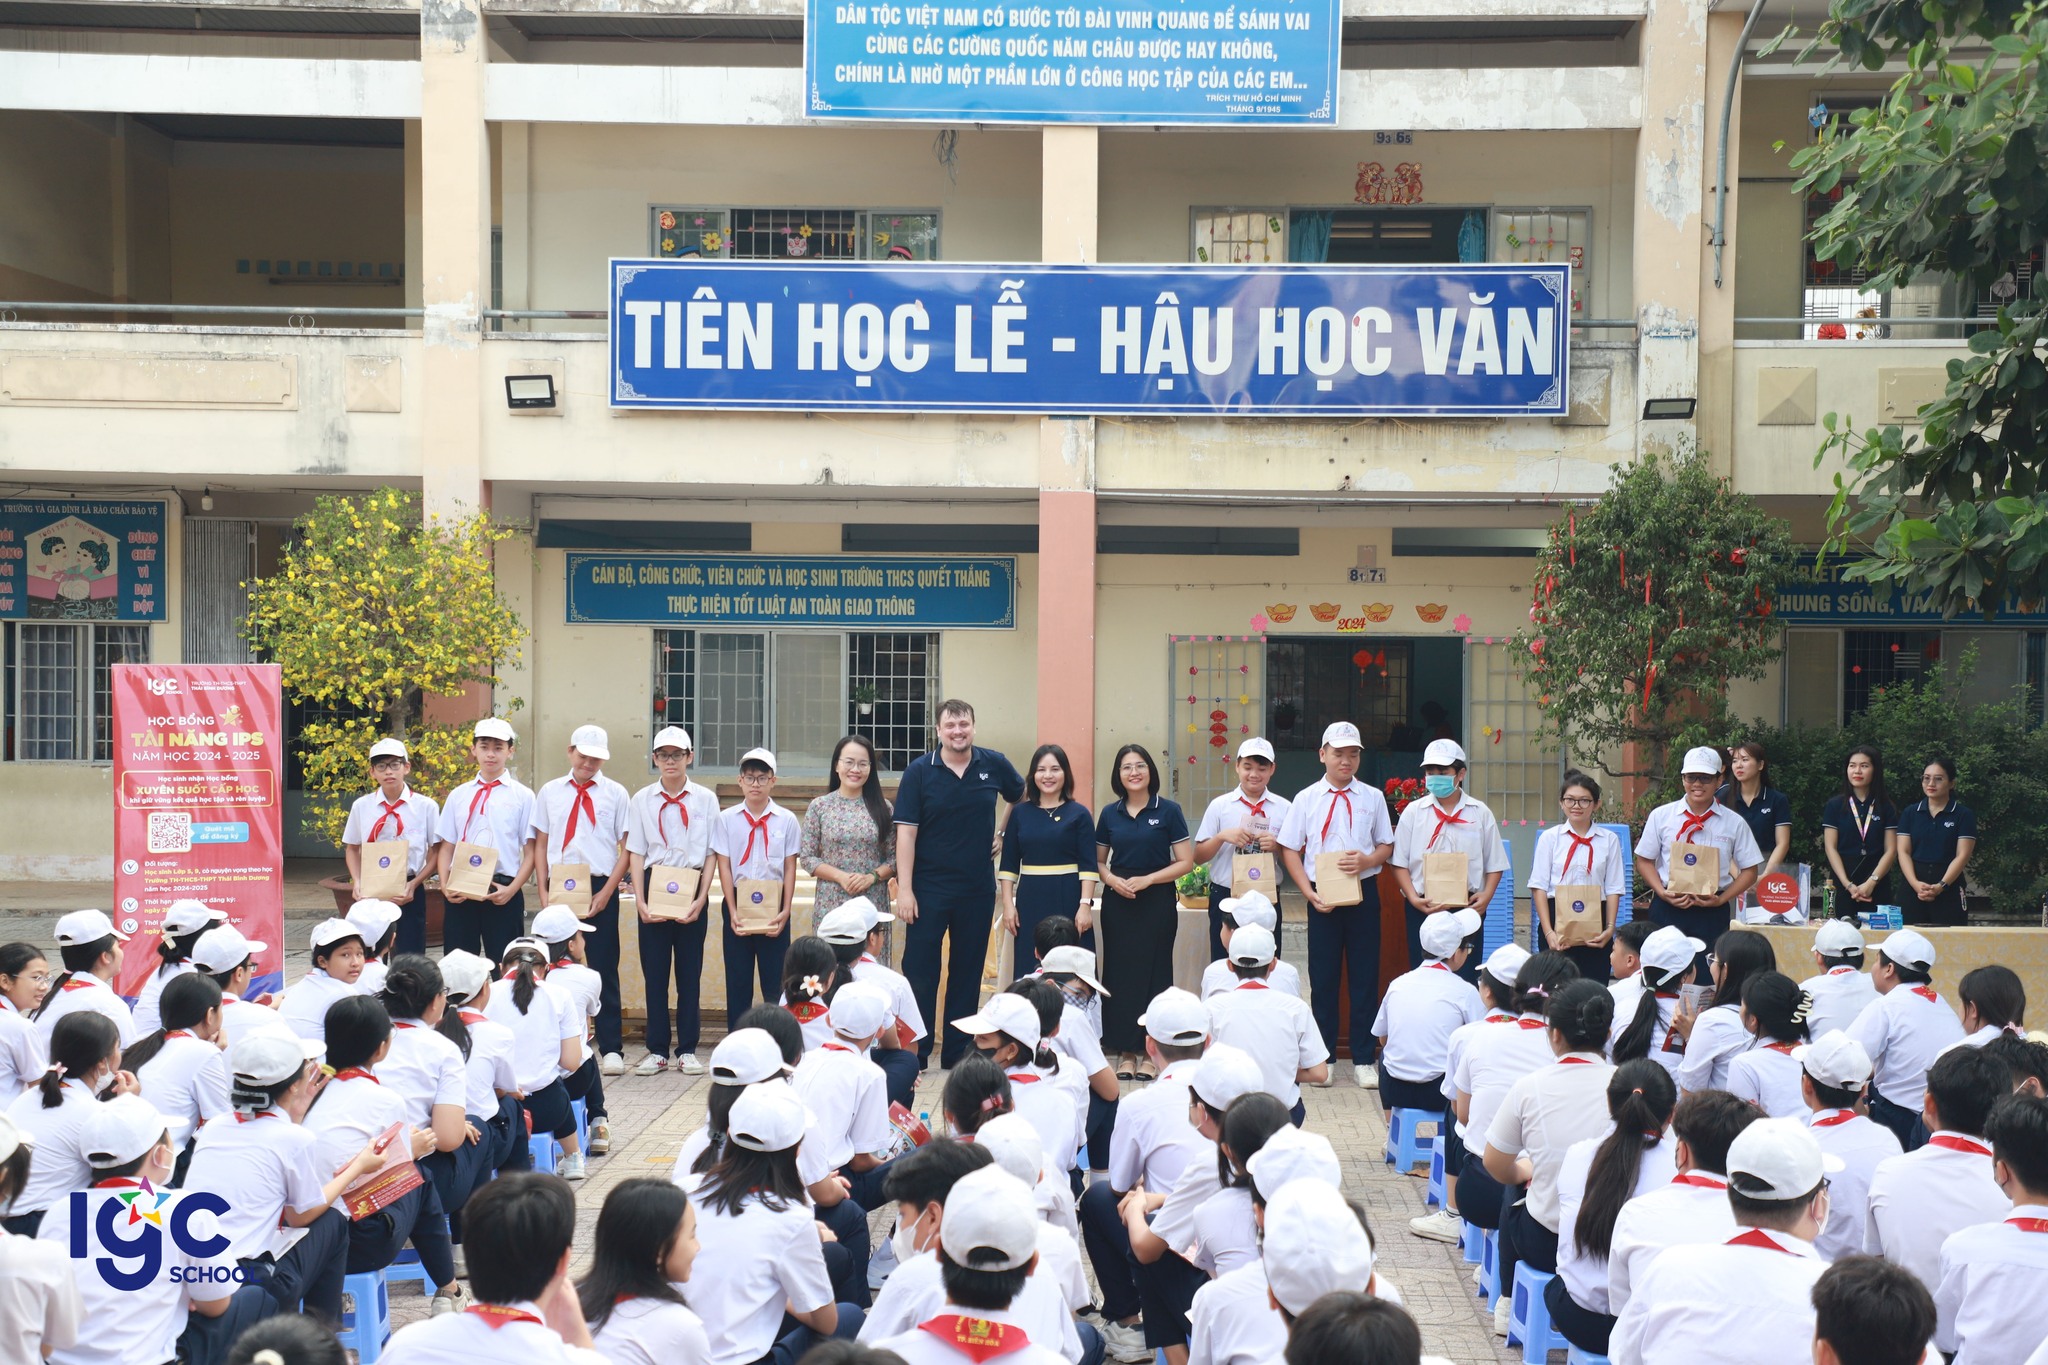 IPS tổ chức chuyên đề định hướng “Làm thế nào học tốt tiếng Anh” dành cho học sinh các trường tiểu học Nguyễn Thị Sáu và THCS Quyết Thắng